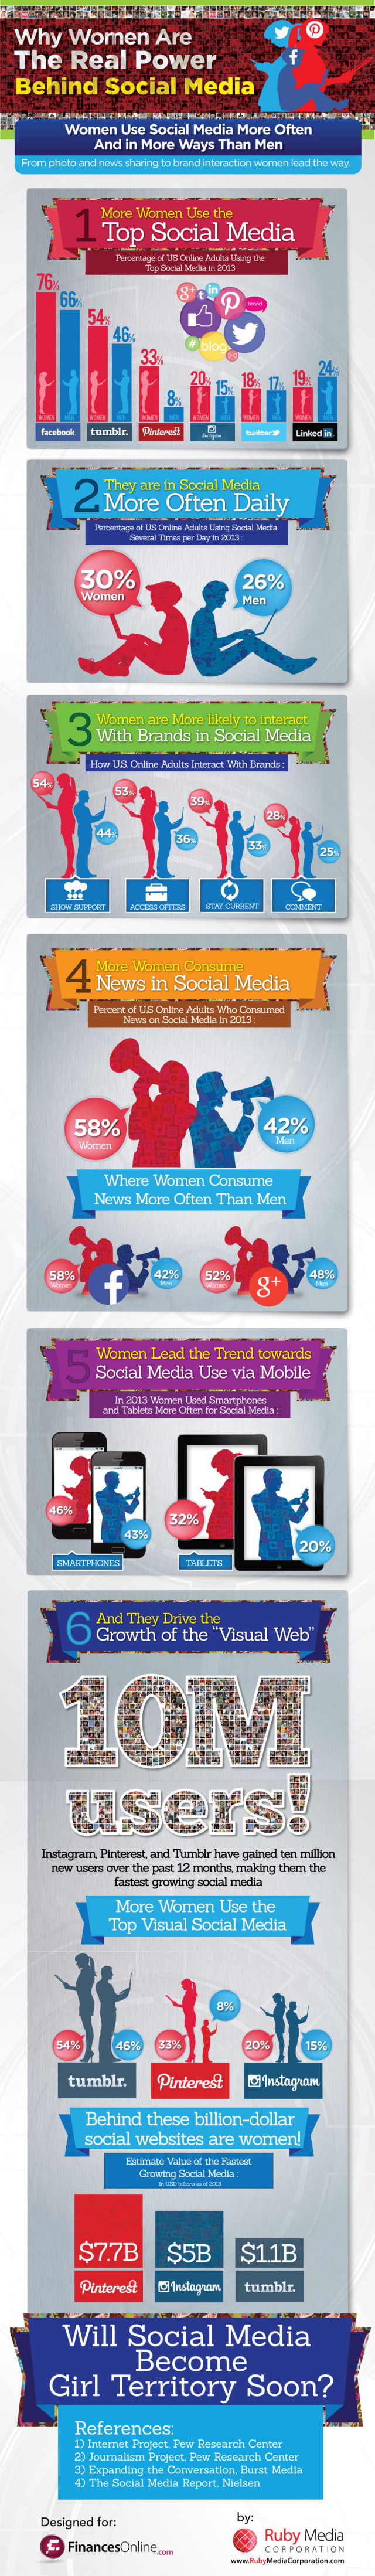 social-media-infographic-women-power